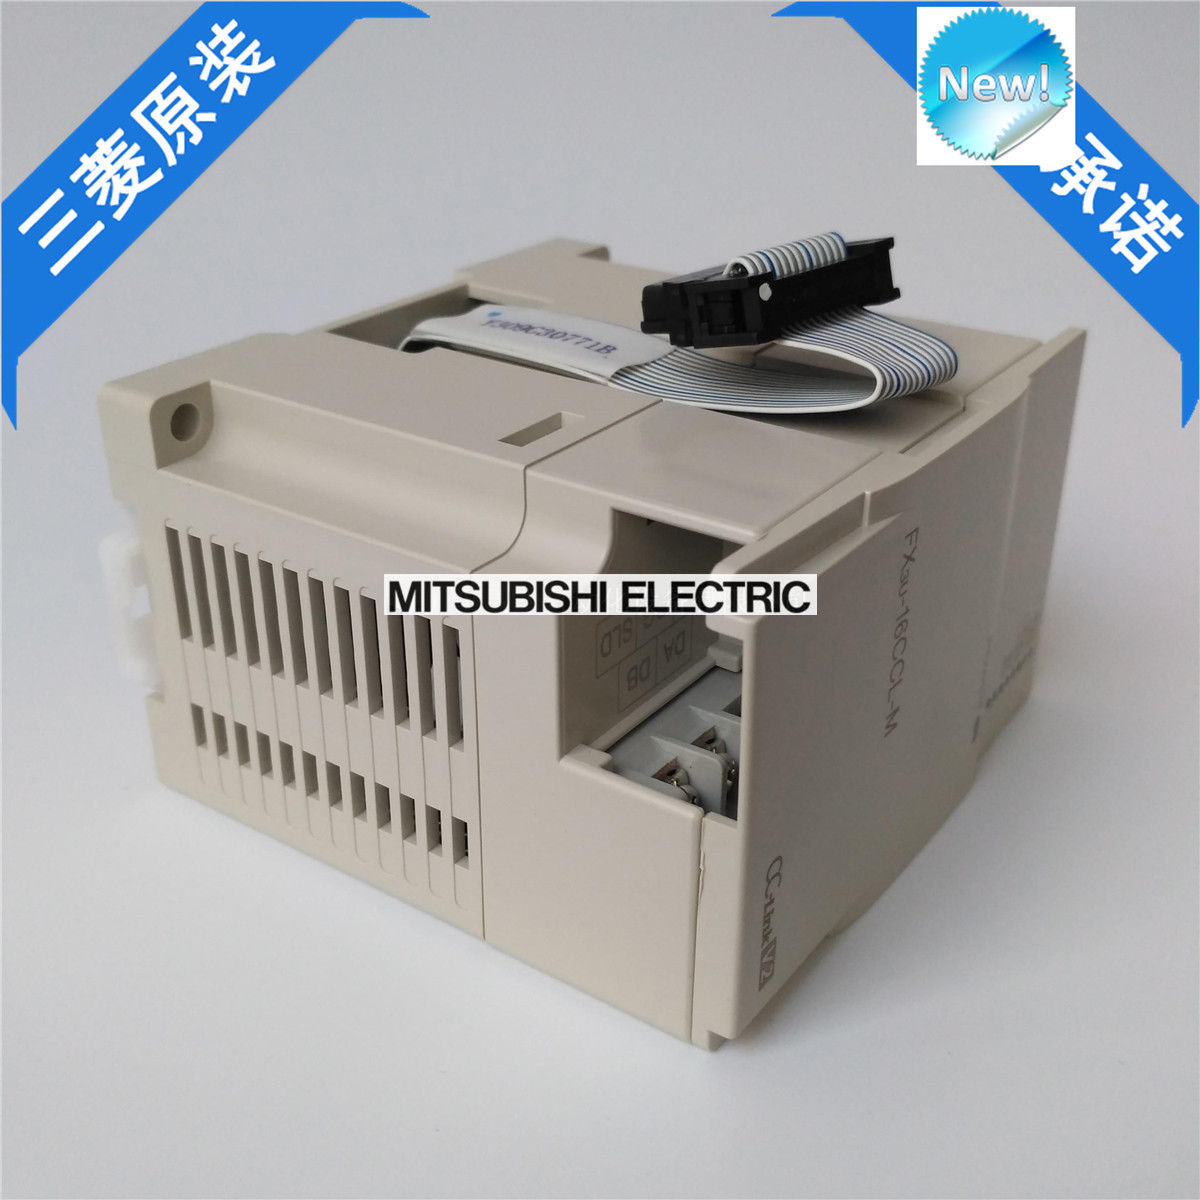 Original New Mitsubishi PLC FX3U-16CCL-M In Box FX3U16CCLM - Click Image to Close